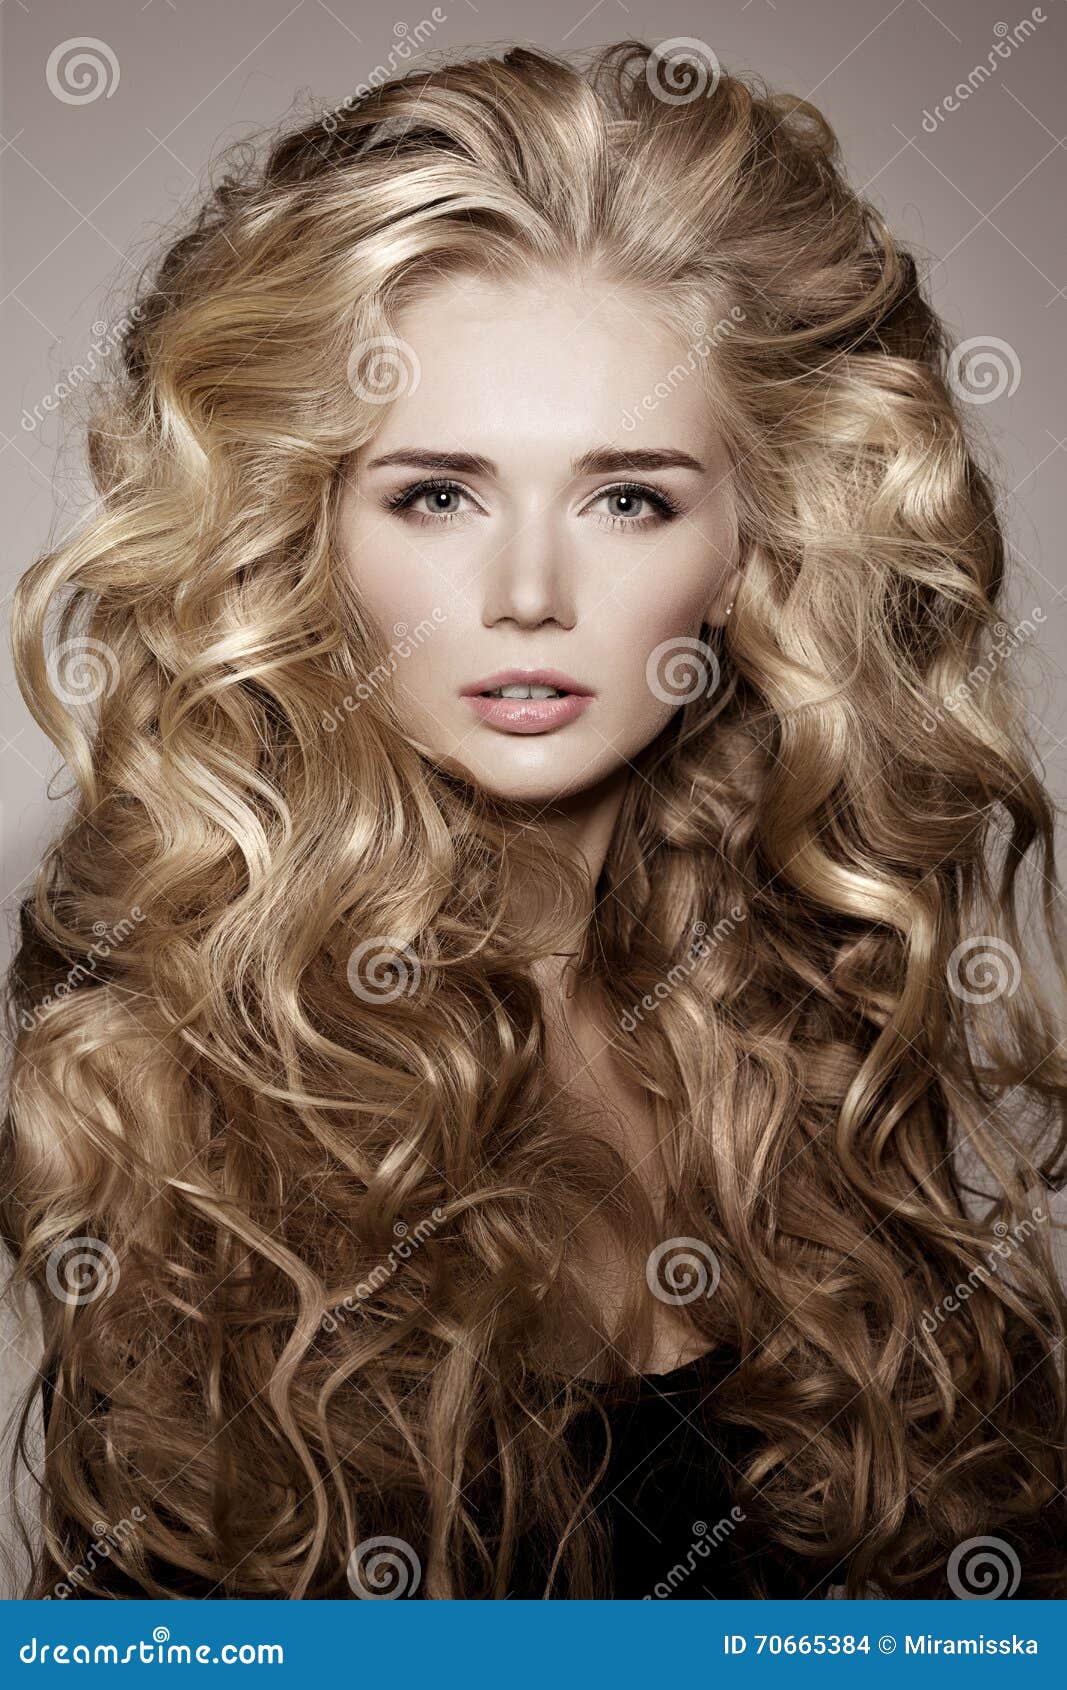 Cabelo. linda garota com cabelo longo ondulado e brilhante. mulher